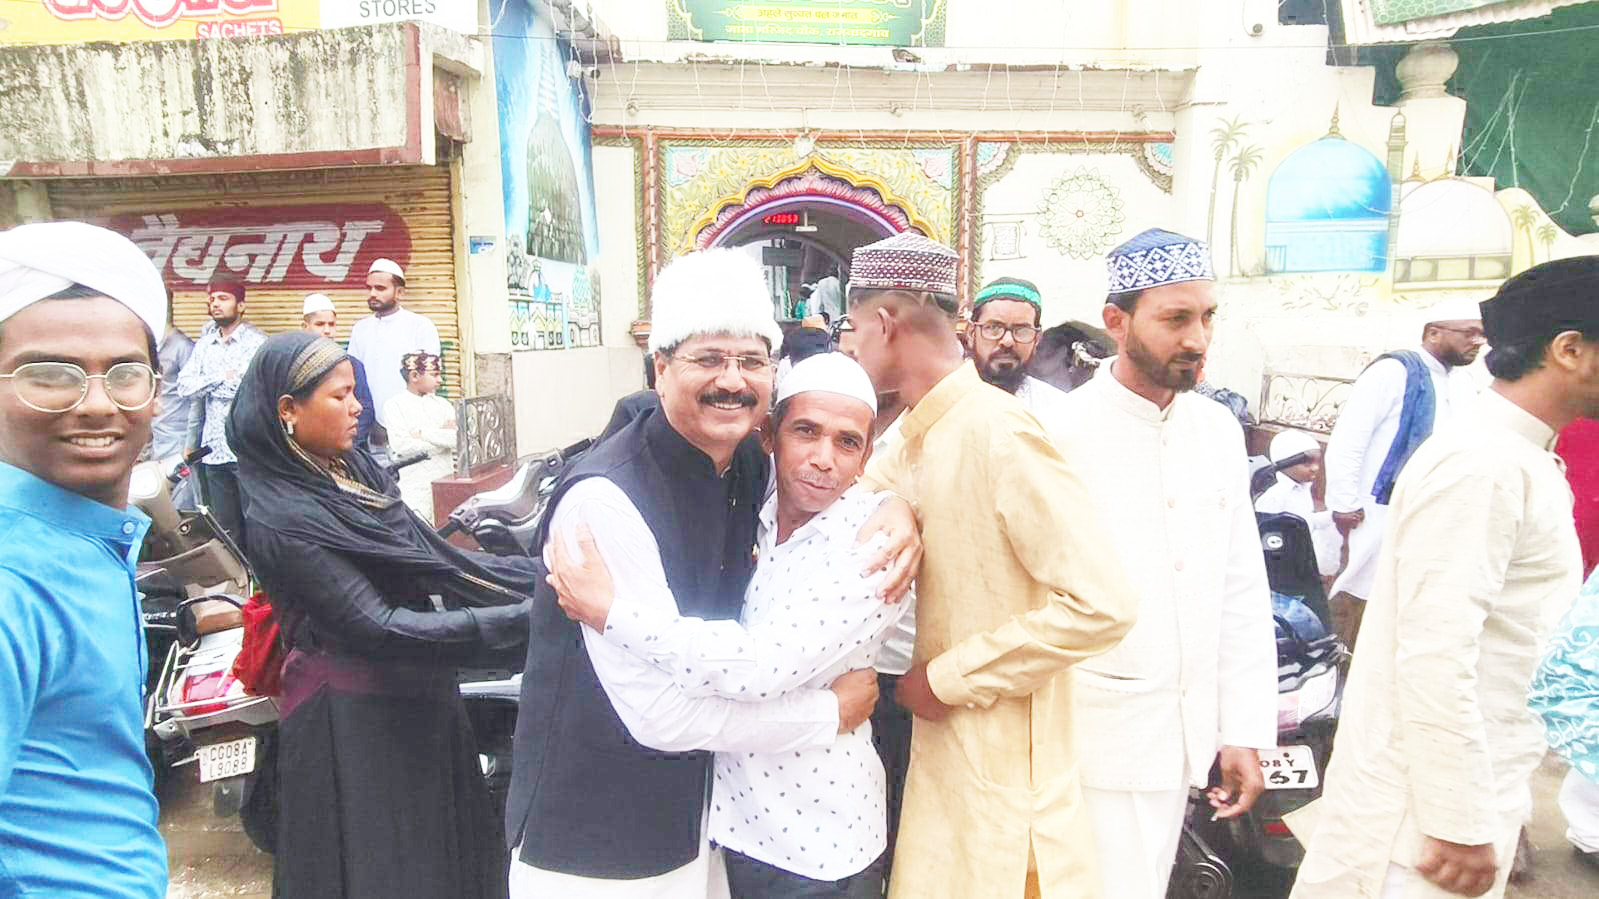 मस्जिदों में नमाज के बाद गले मिल दी ईद की मुबारकबाद